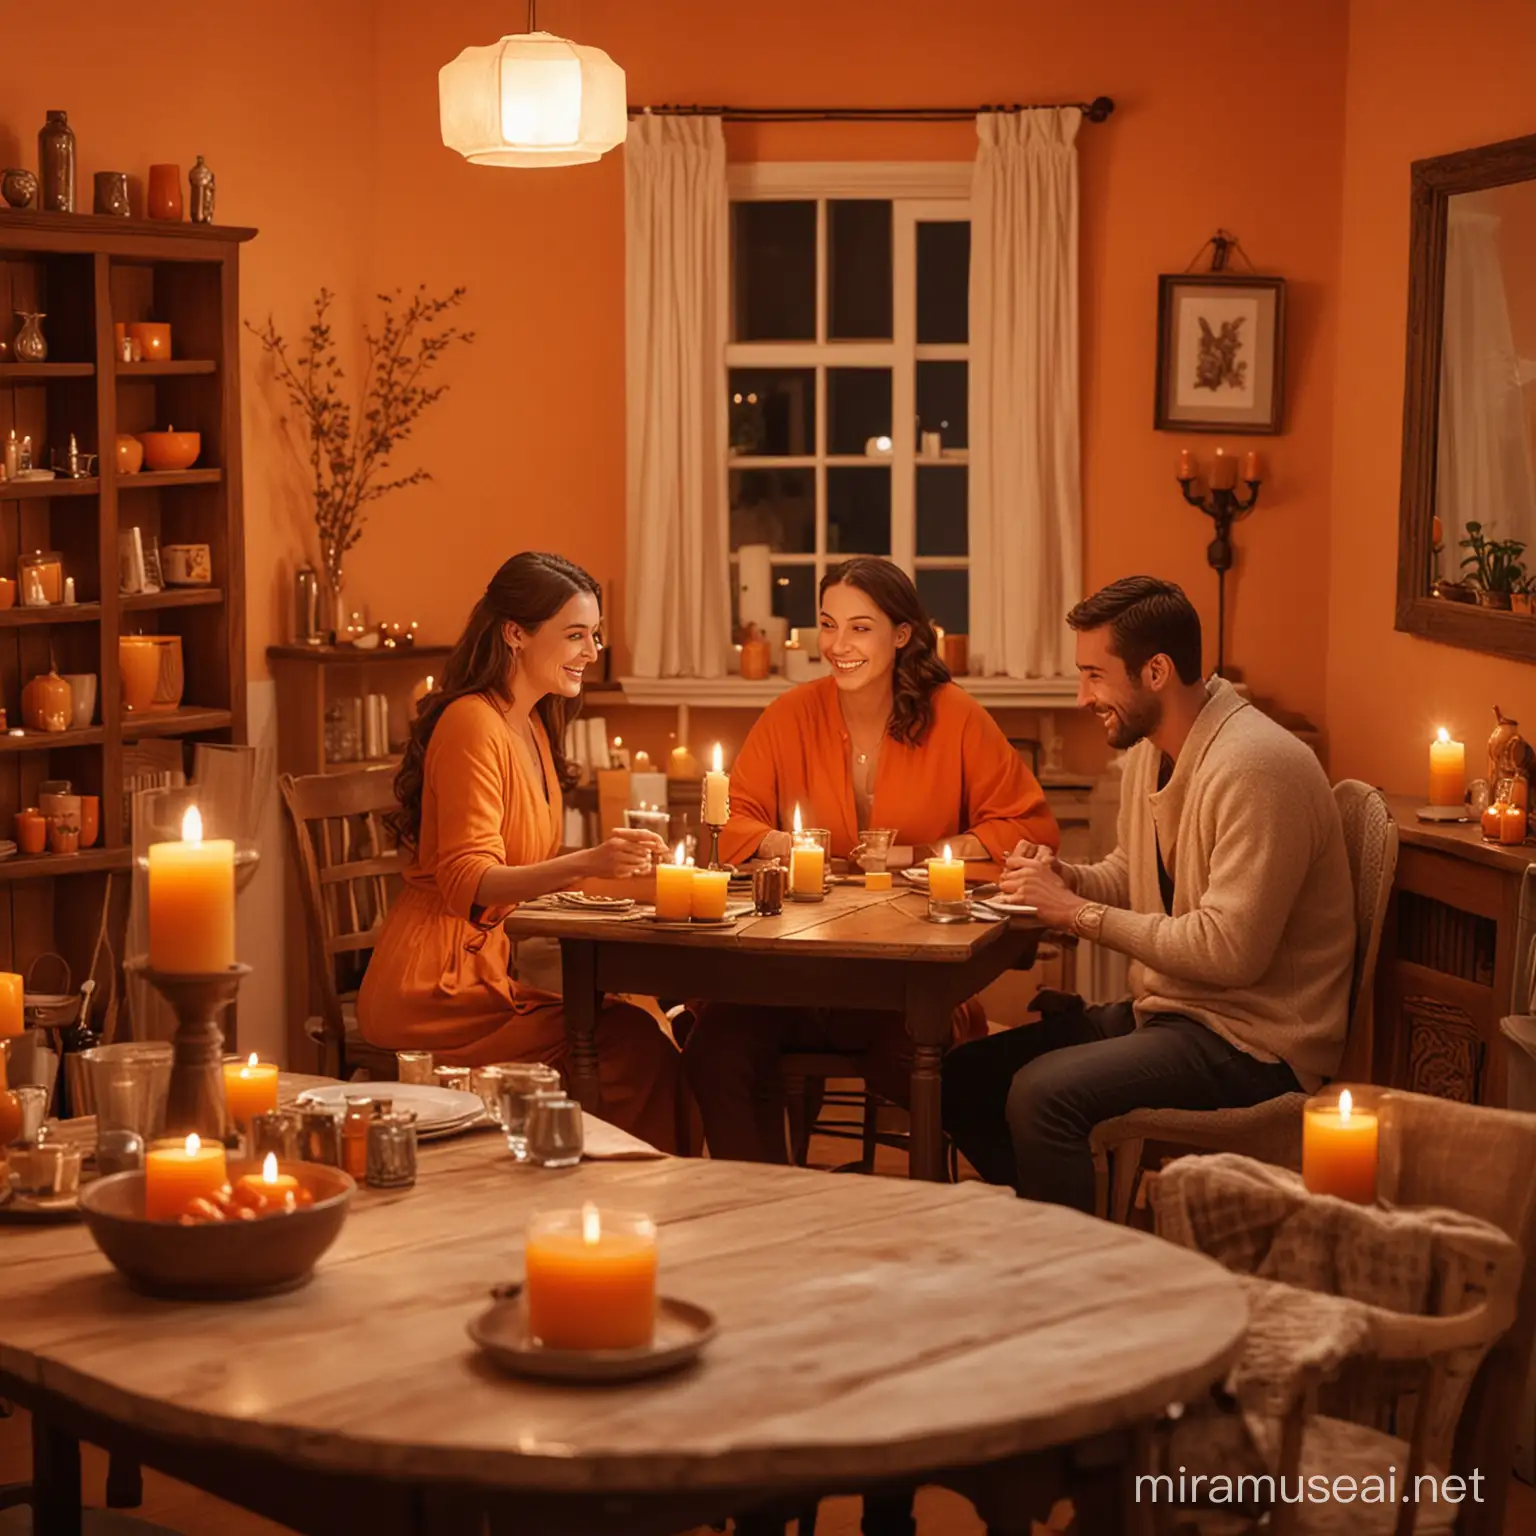 уютная комната, в интерьере есть оранжевый цвет, за столом улыбающиеся женщина и мужчина, на столе миниатюрная свеча.